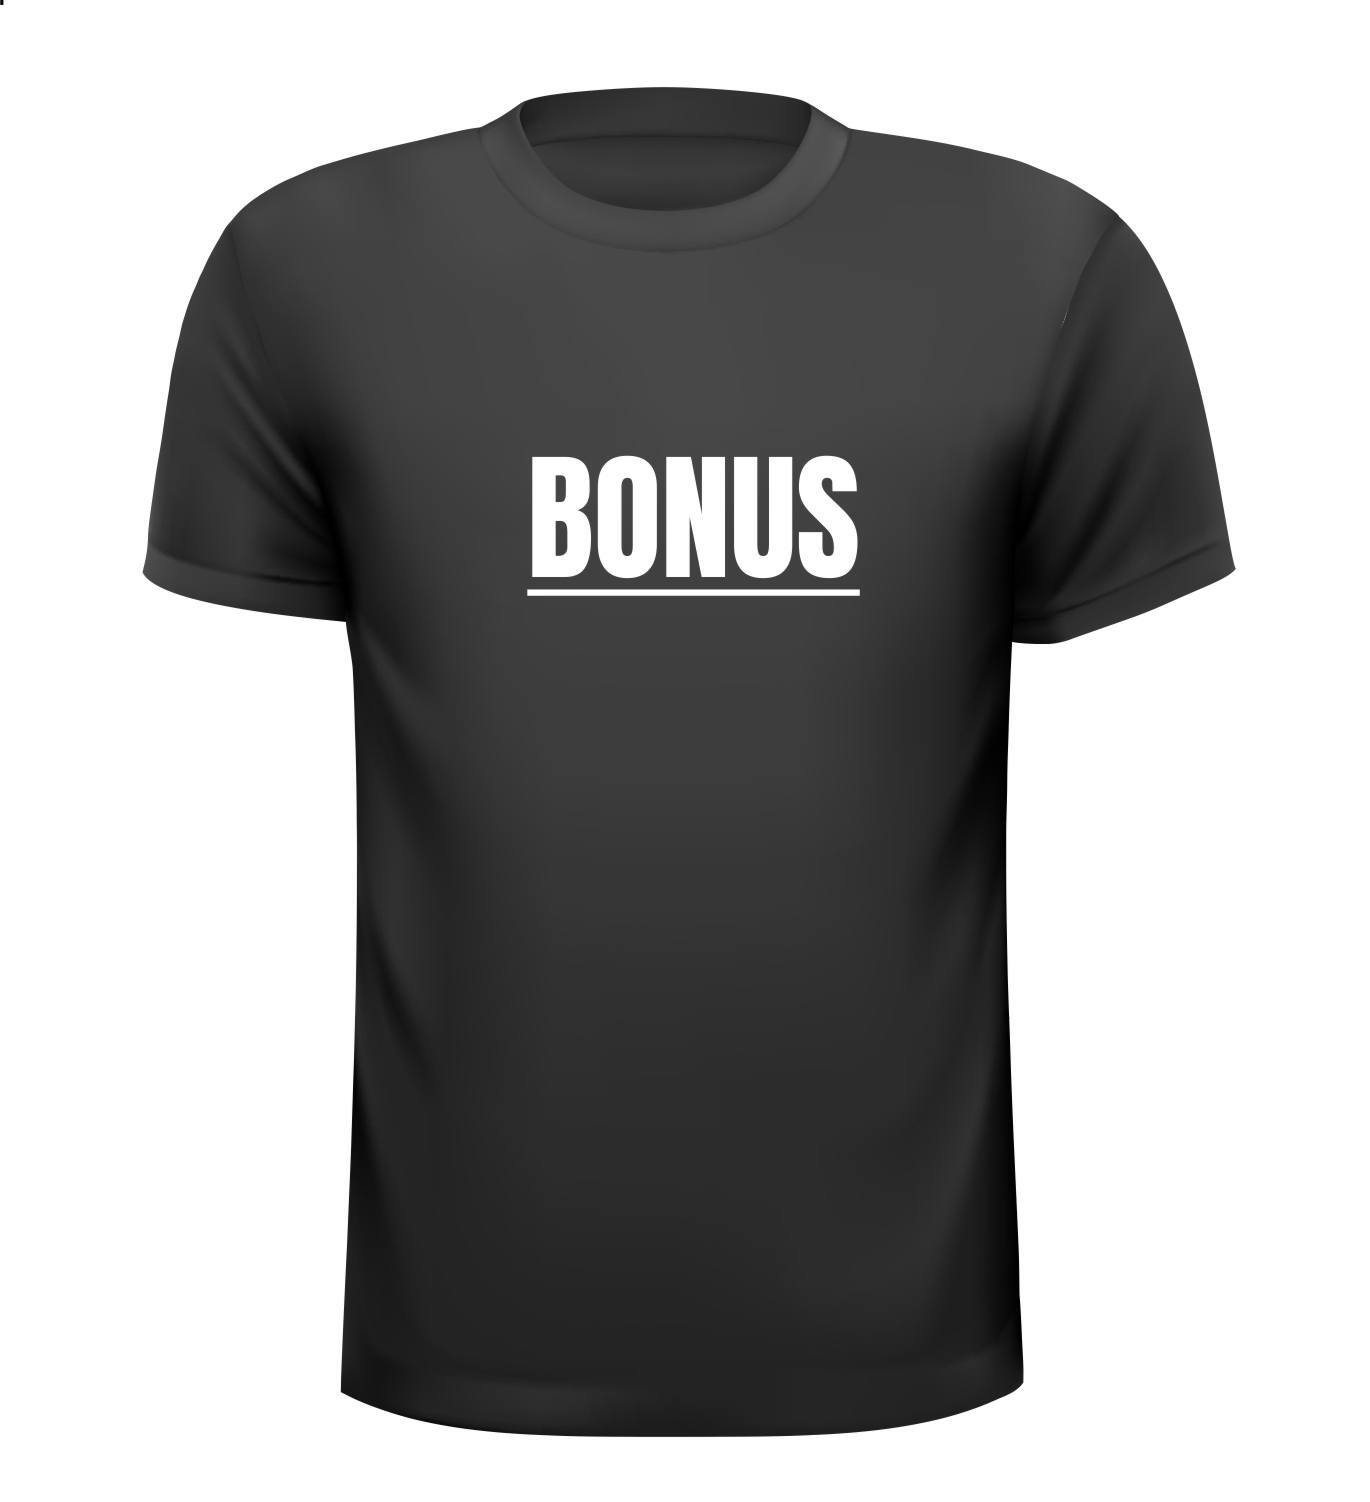 Bonus T-shirt